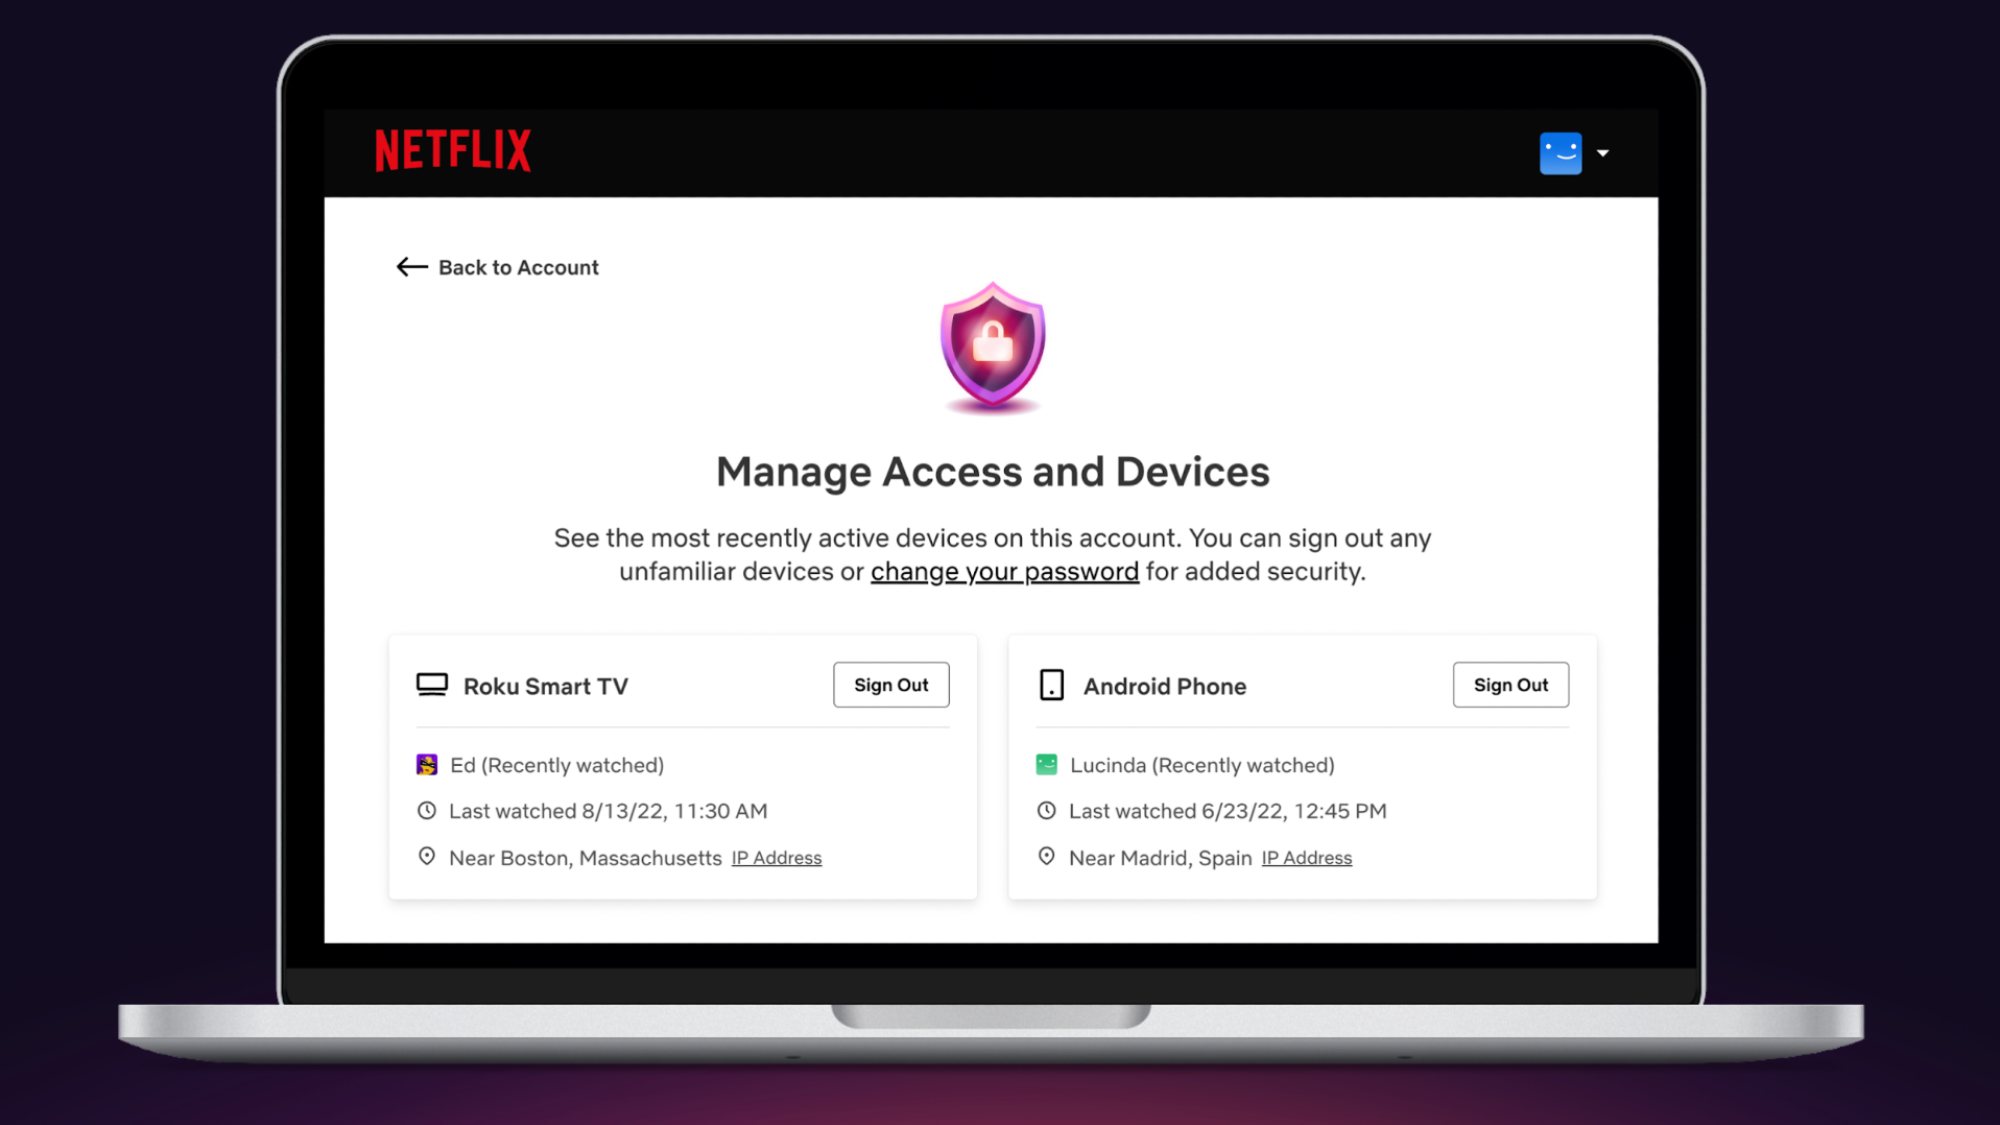 عرض شاشة لإعداد حساب Netflix إدارة الوصول والأجهزة